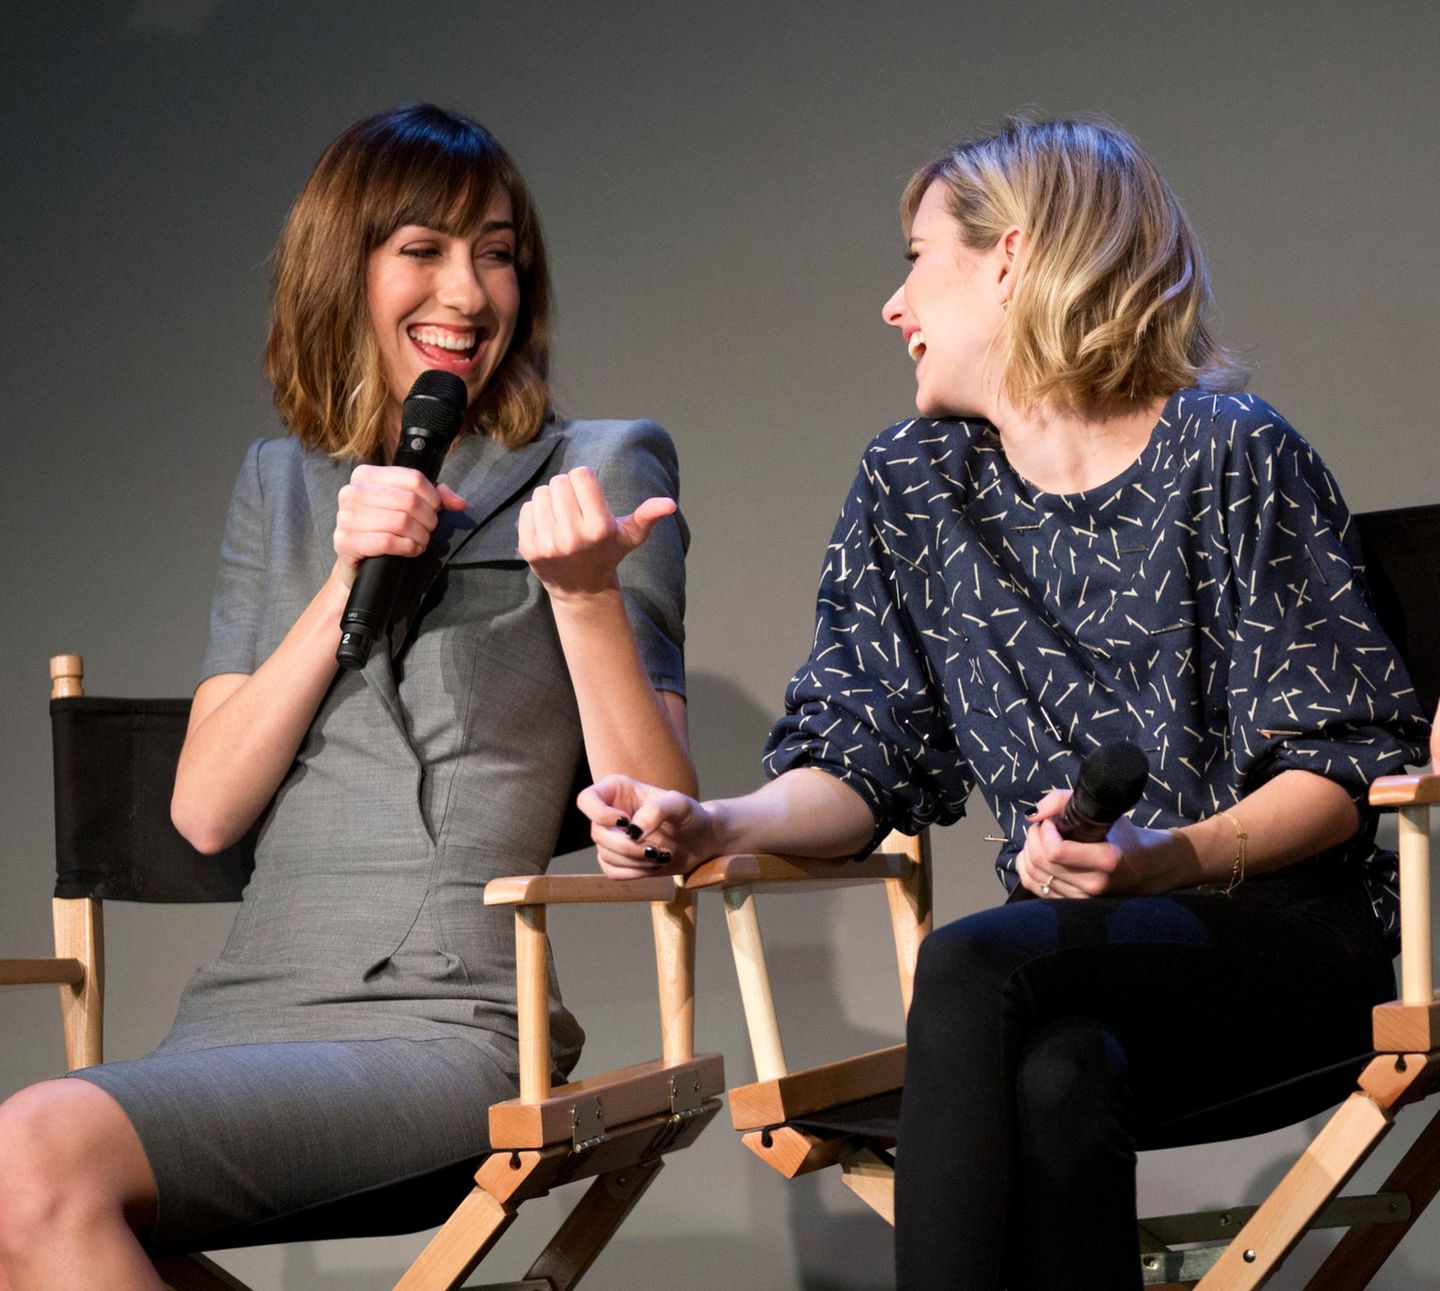 Regisseurin Gia Coppola und Schauspielerin Emma Roberts diskutieren über ihren Film "Palo Alto".